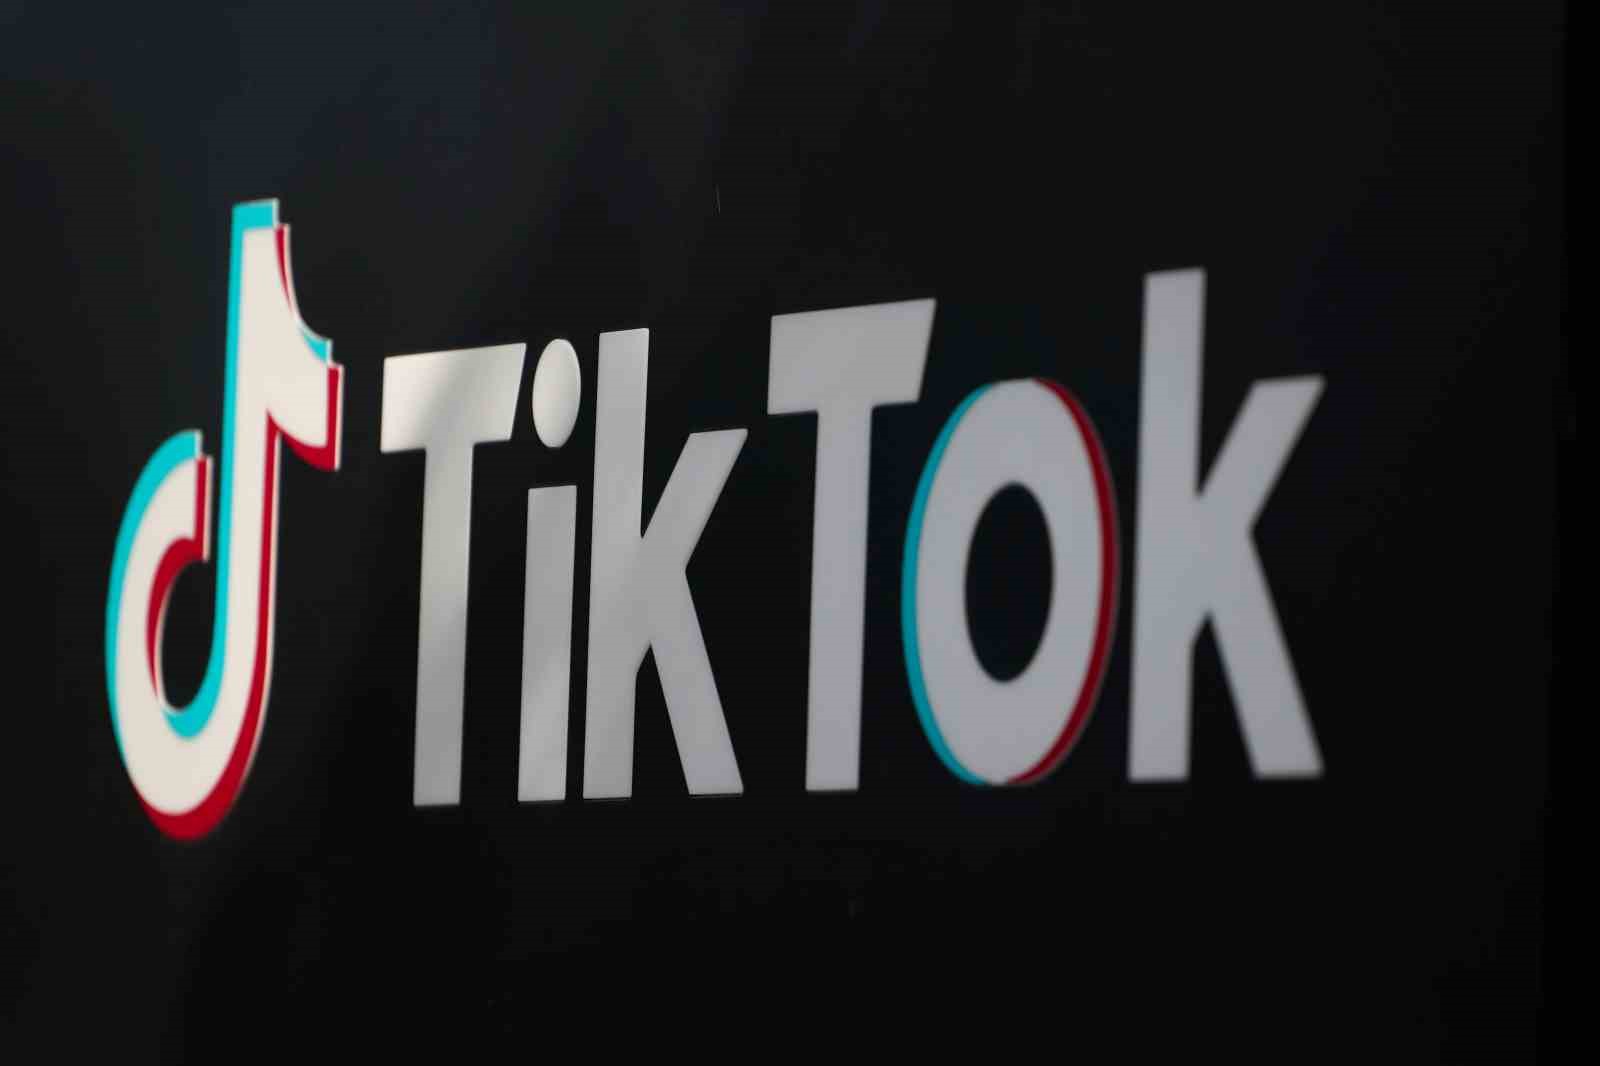 TikTok CEO’su Shou: "(ABD’deki TikTok yasası) İçiniz rahat olsun, hiçbir yere gitmiyoruz"